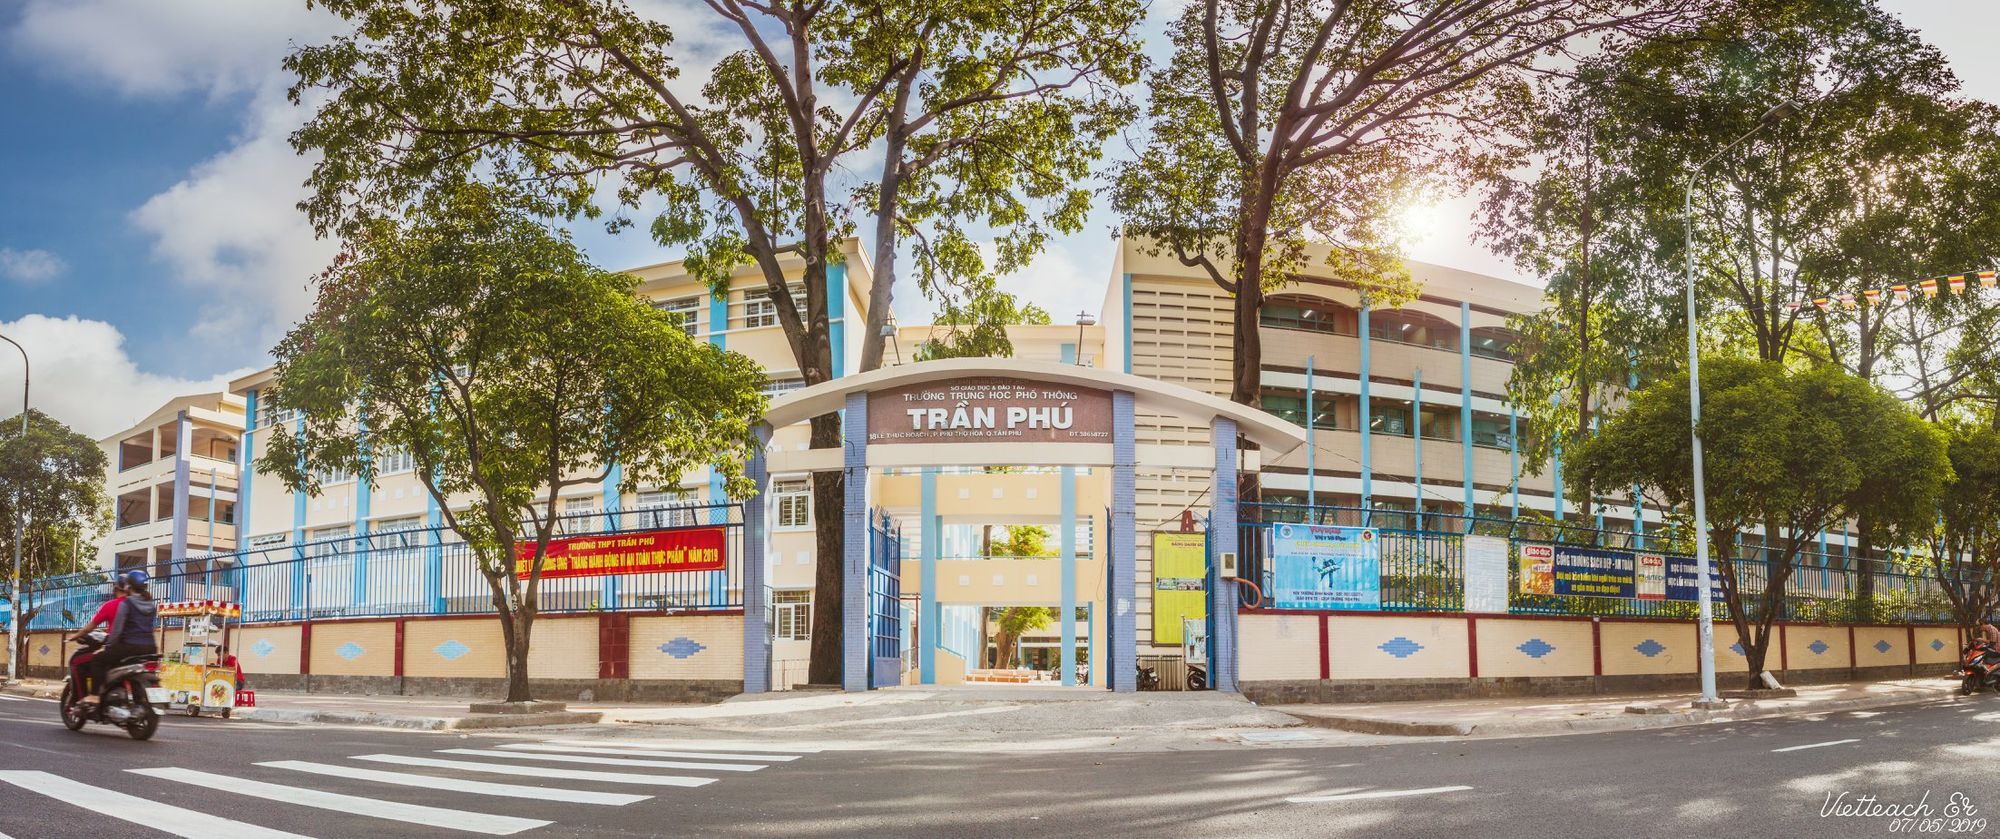 Trường THPT Trần Phú ảnh 2